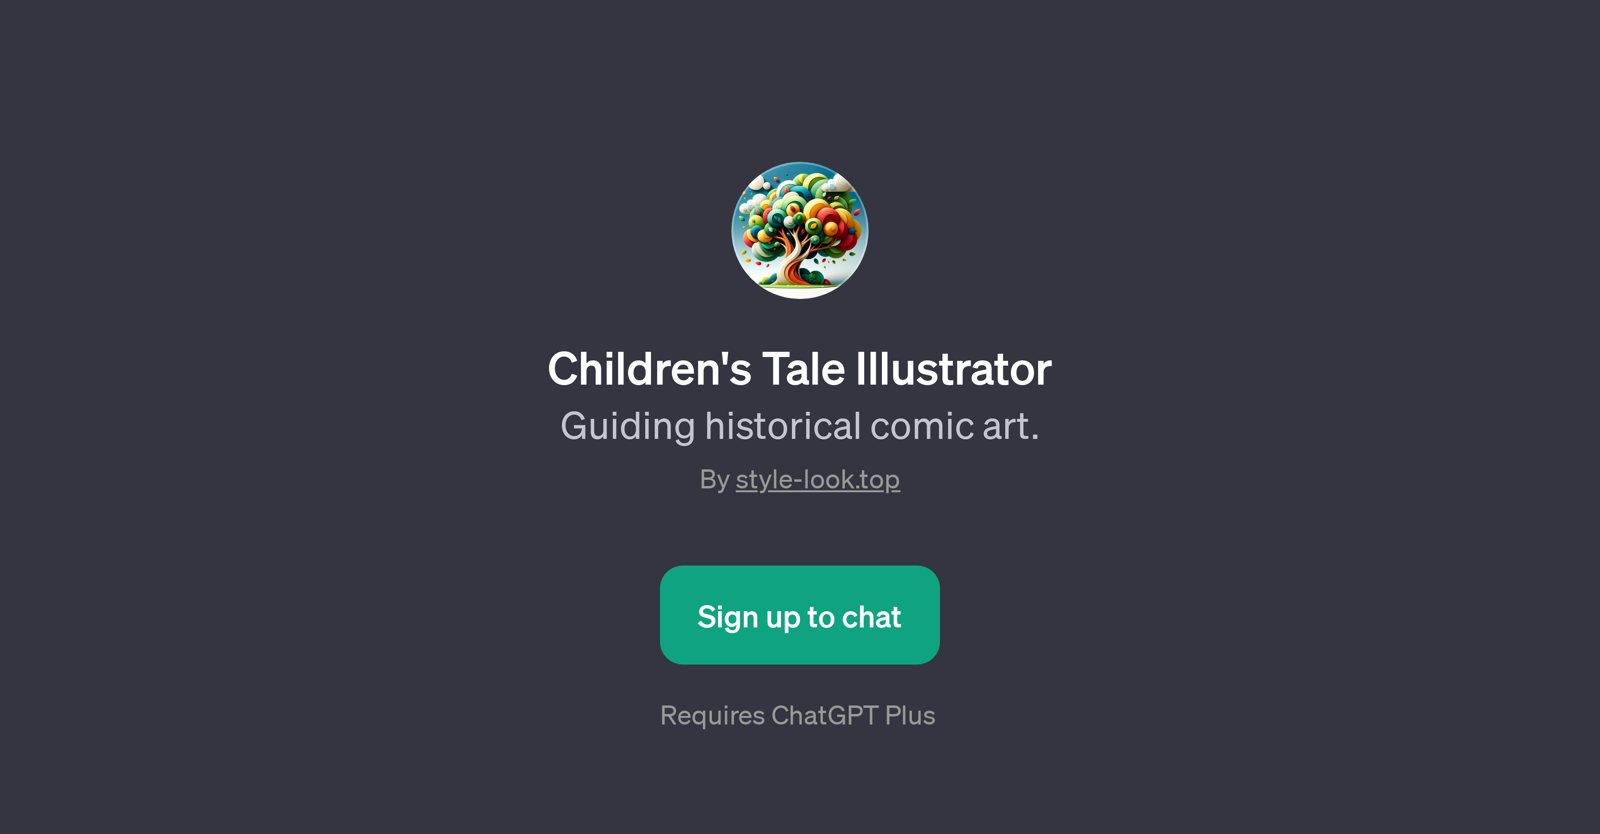 Children's Tale Illustrator website